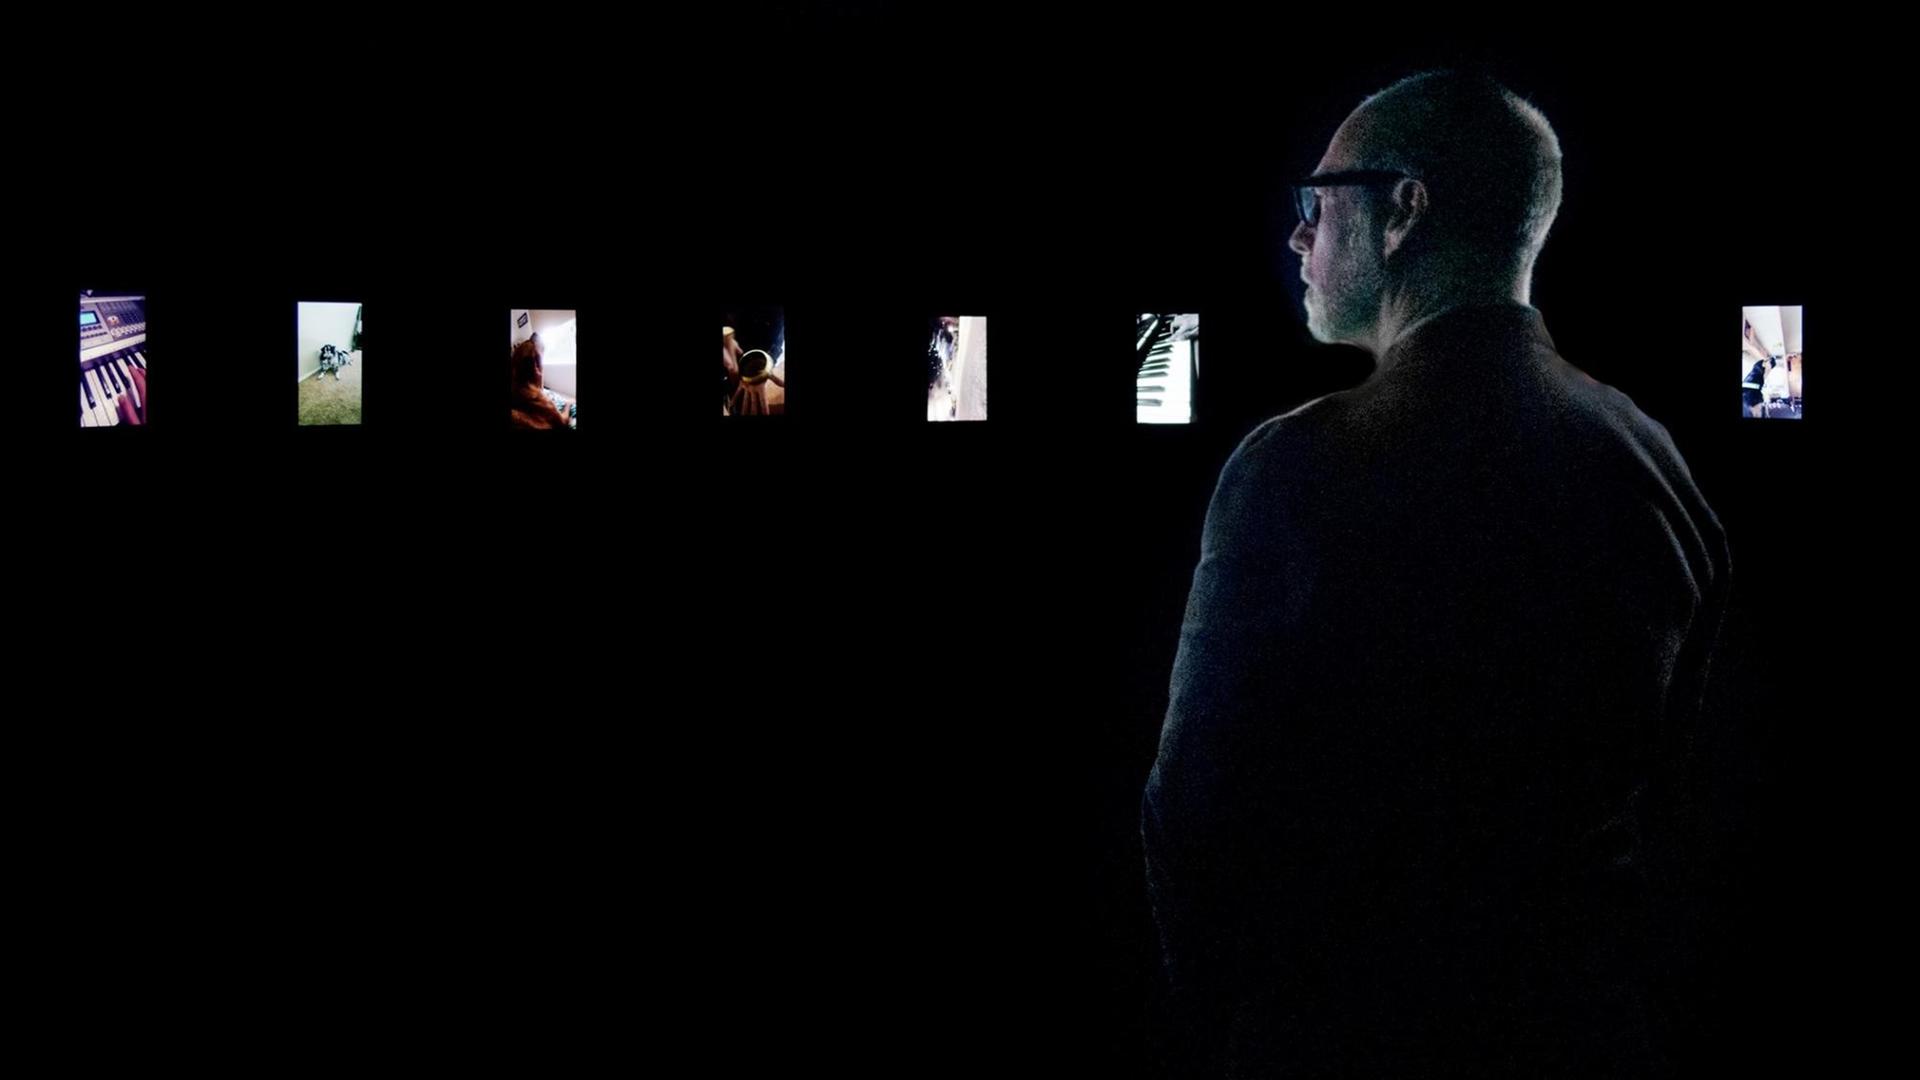 Blick in die Ausstellung "Sound Stories" von Christian Marclay im Los Angeles County Museum of Art: Ein Mann betrachtet in einem dunklen Raum vor ihm leuchtene Handybildschirme